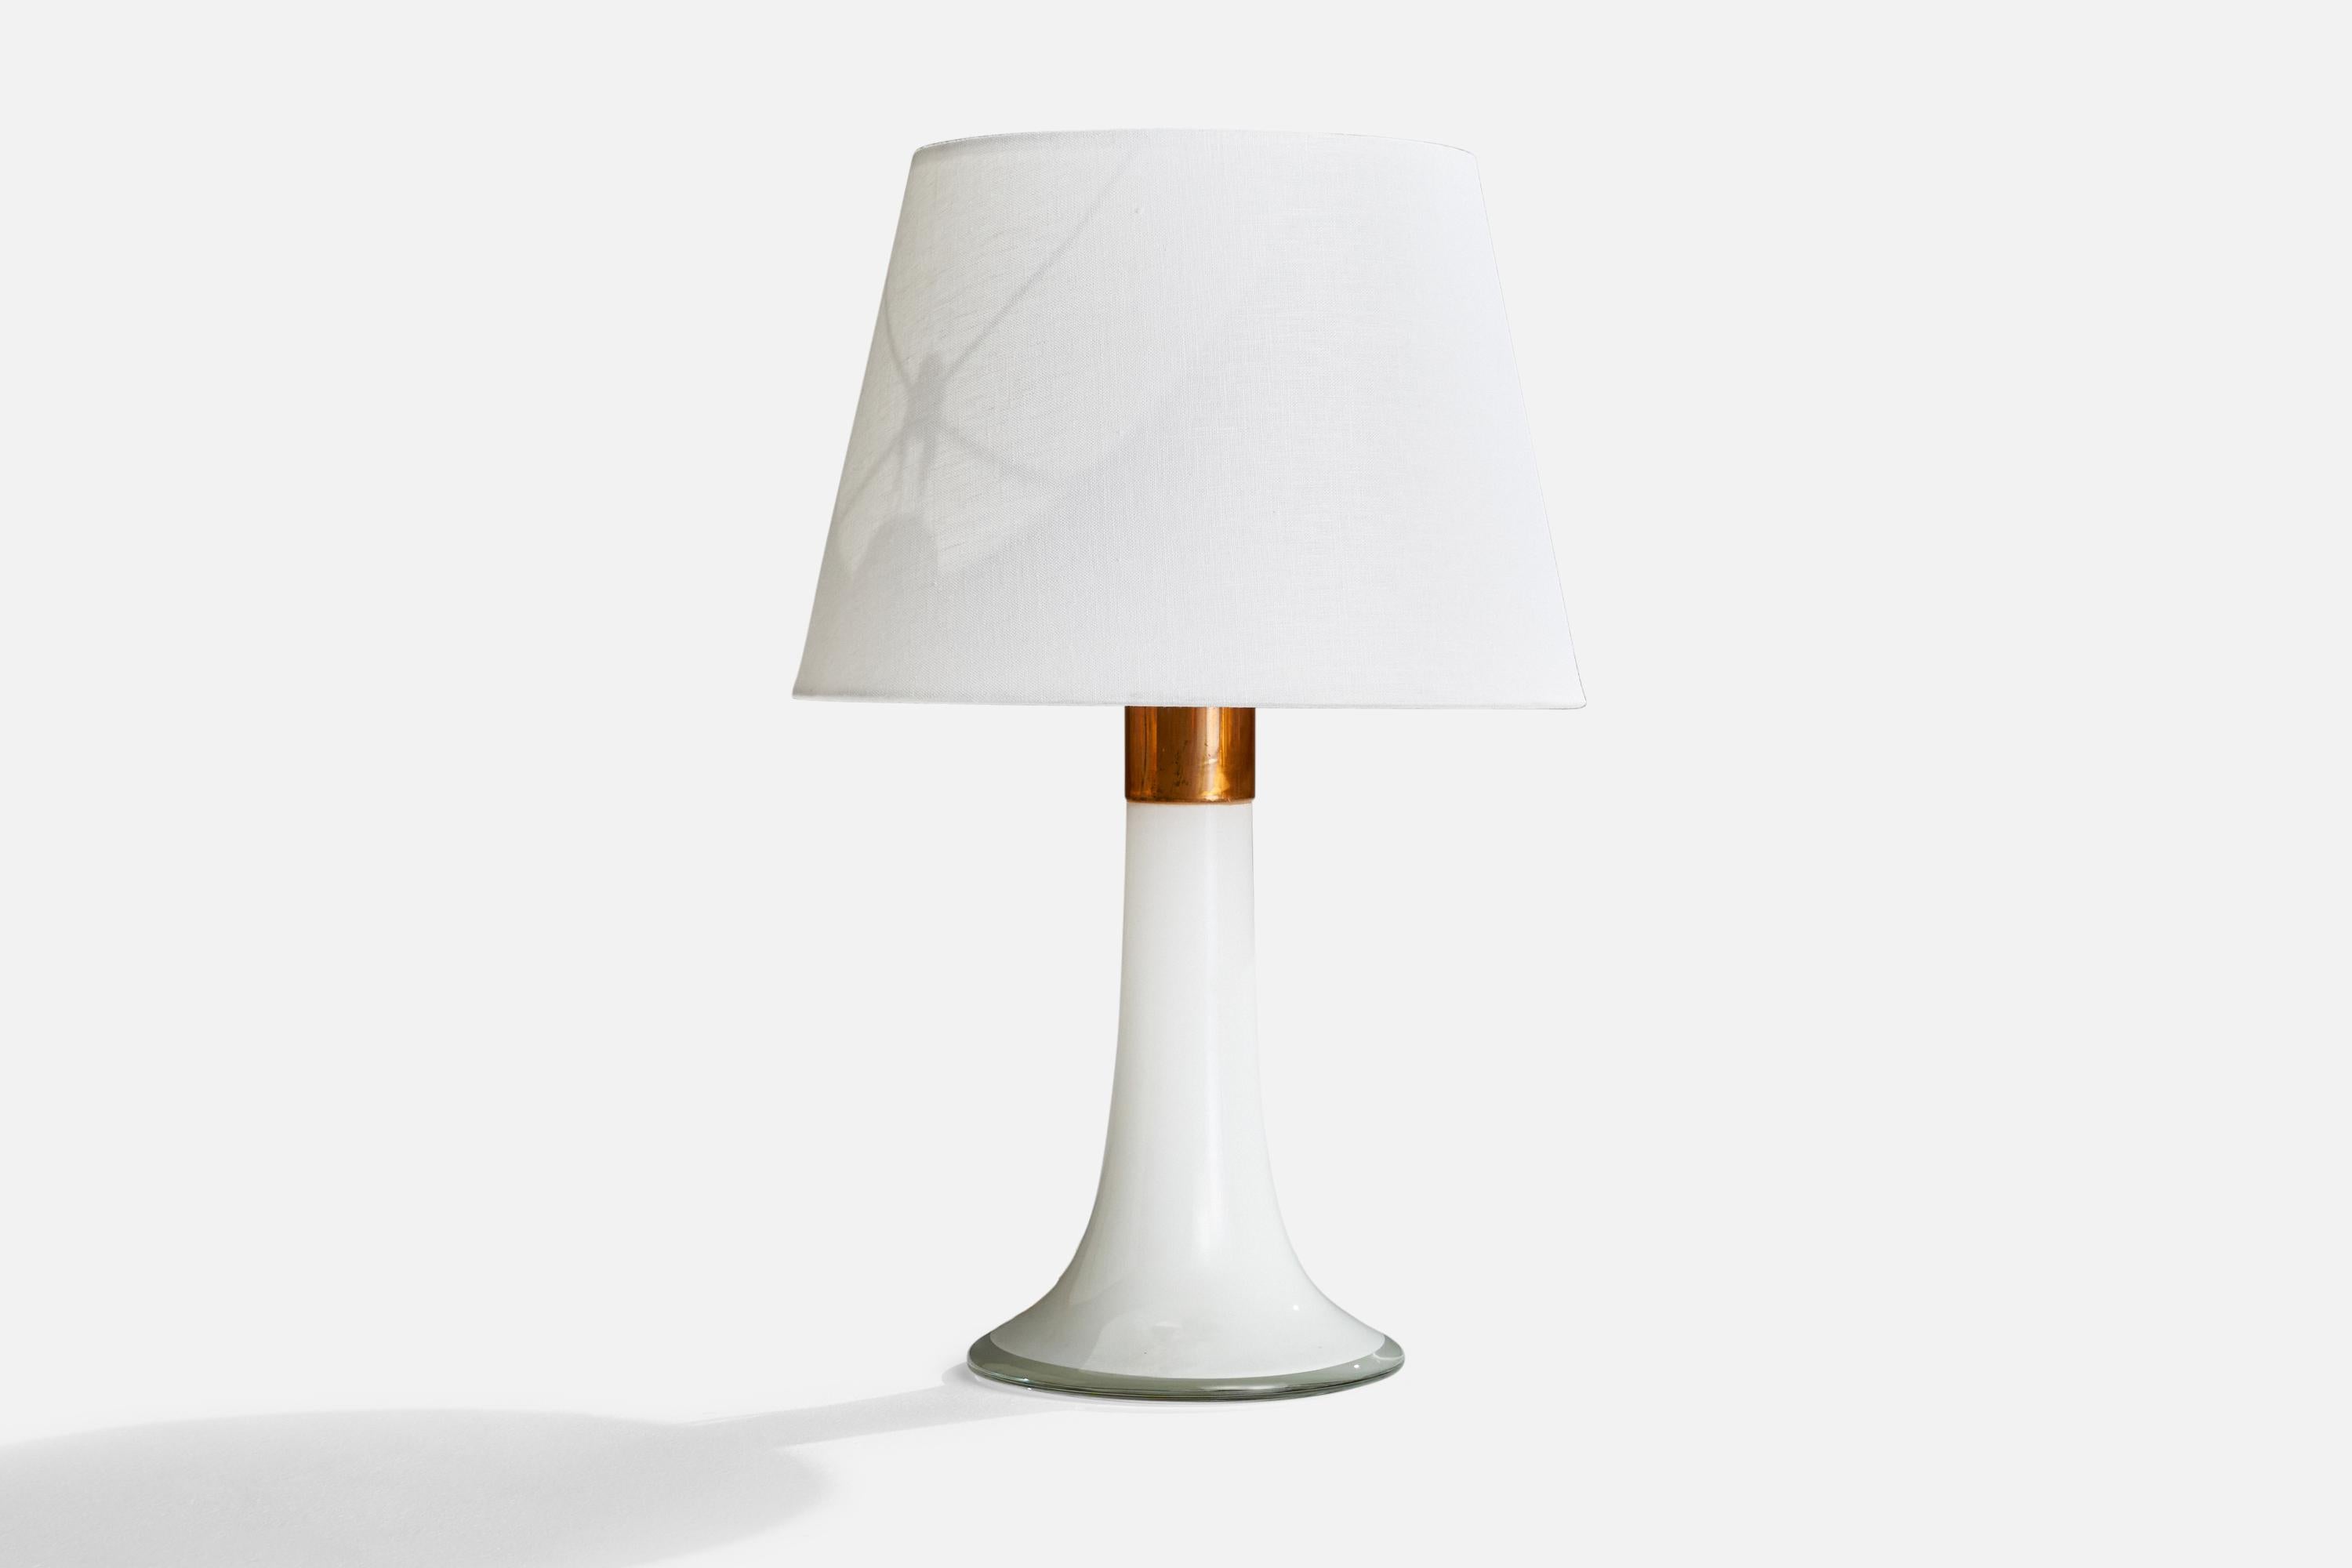 Lampe de table en verre blanc et cuivre conçue par Lisa Johansson-Pape et produite par Ornö, Finlande, années 1960.

Dimensions de la lampe (pouces) : 15